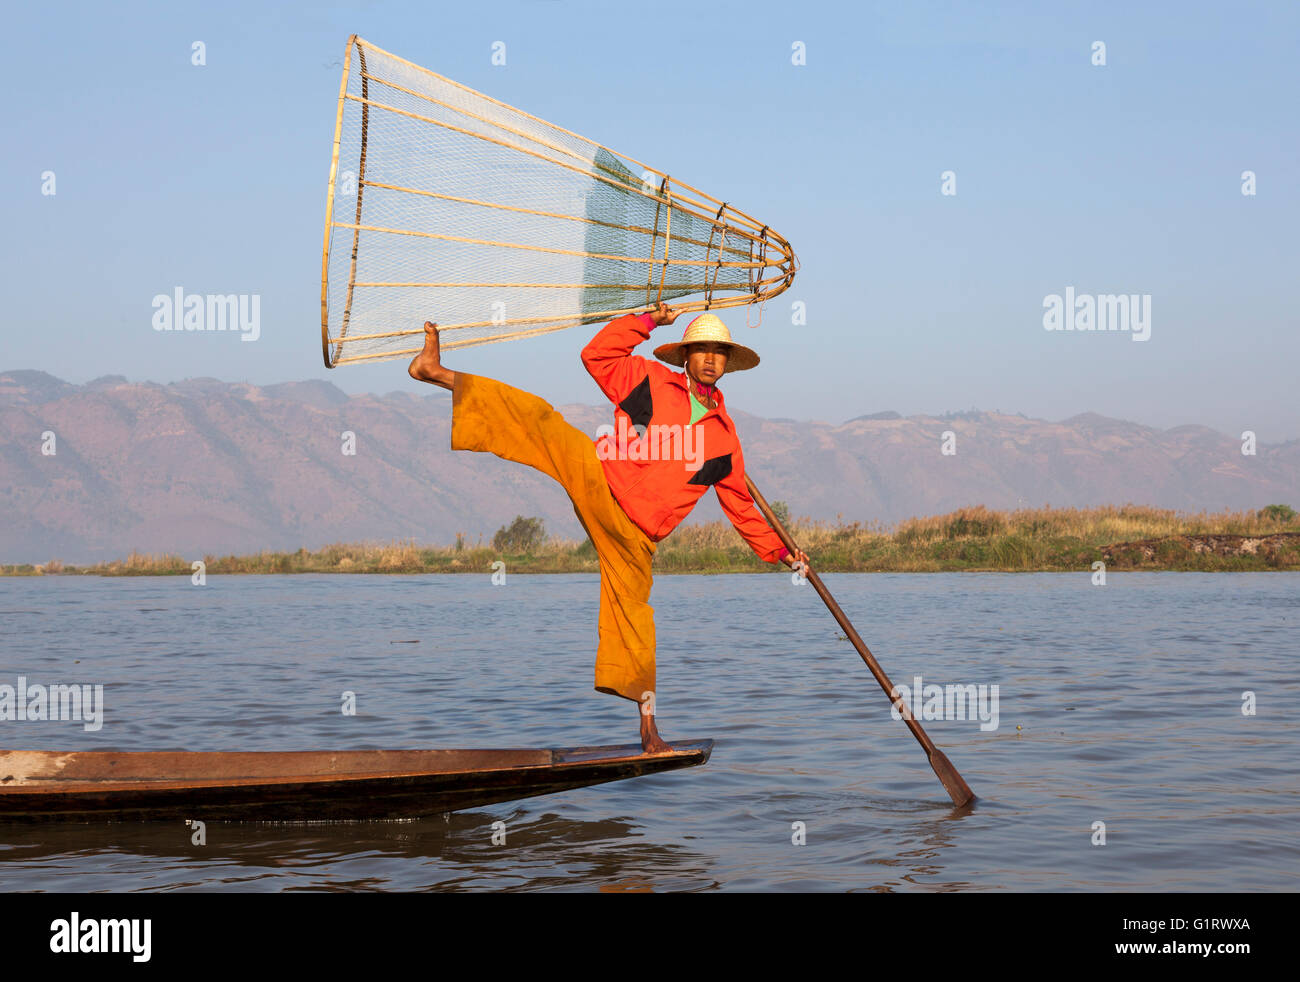 Sur le lac Inle, un pêcheur de son piège poissons sur un mouvement acrobatique (Myanmar). Pêcheur à la nasse sur le lac Inlé. Banque D'Images